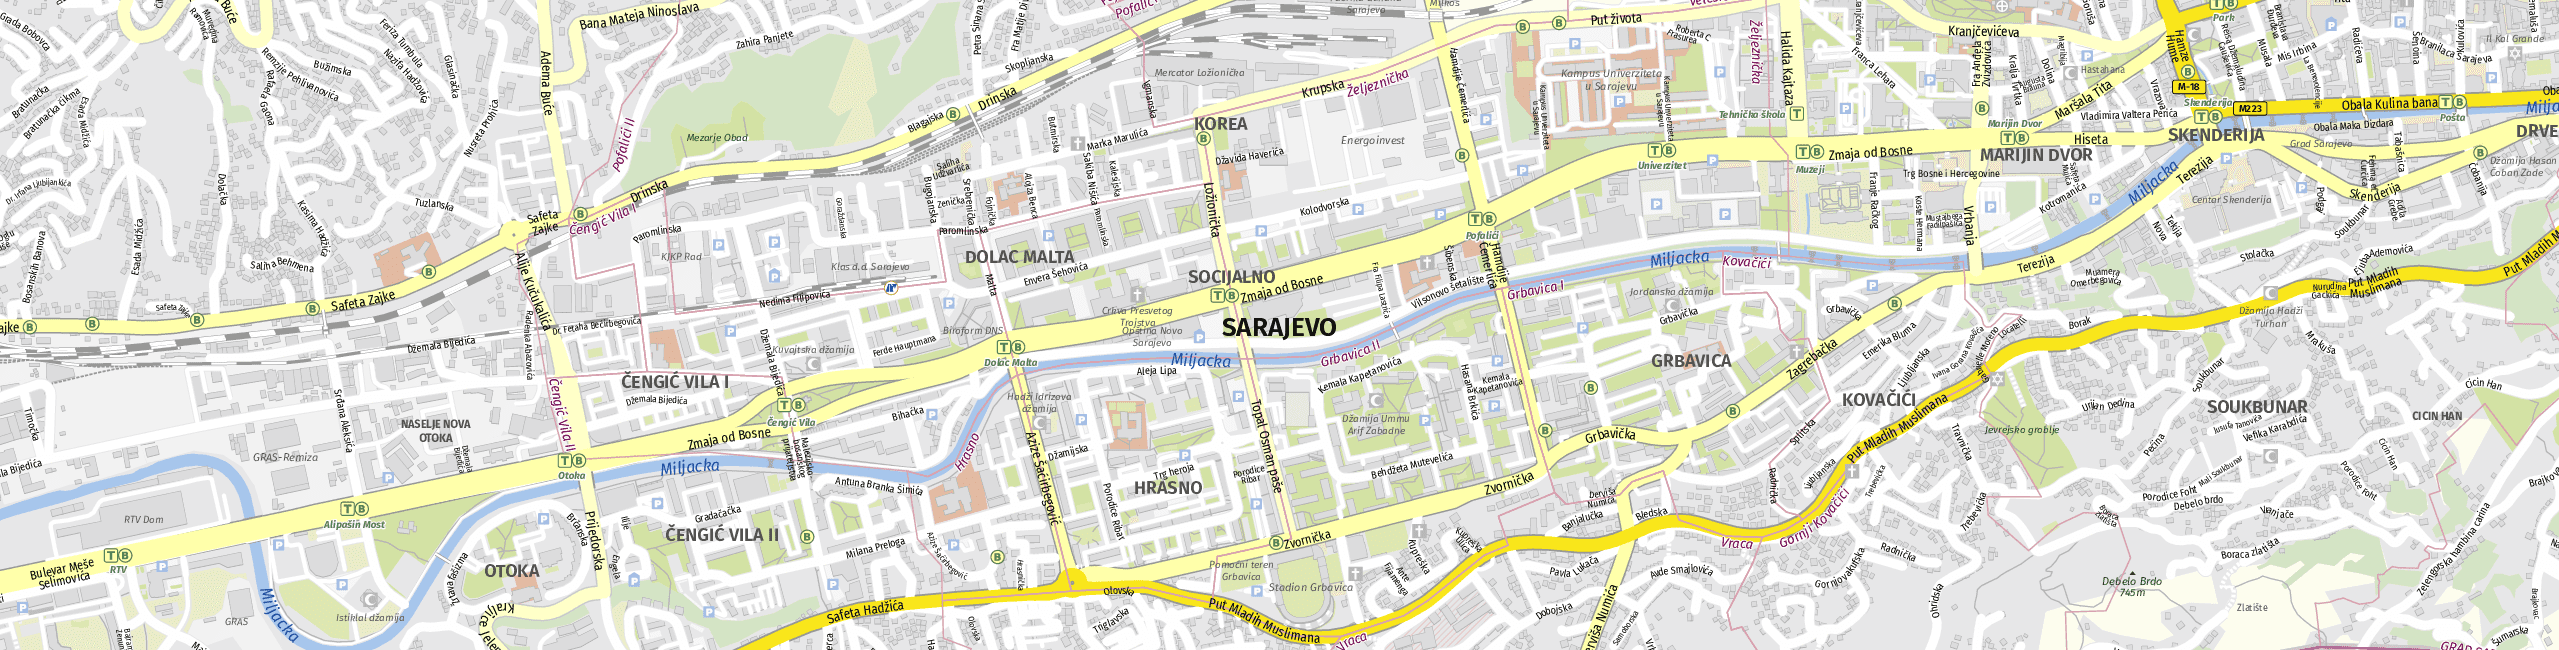 Stadtplan Sarajevo zum Downloaden.